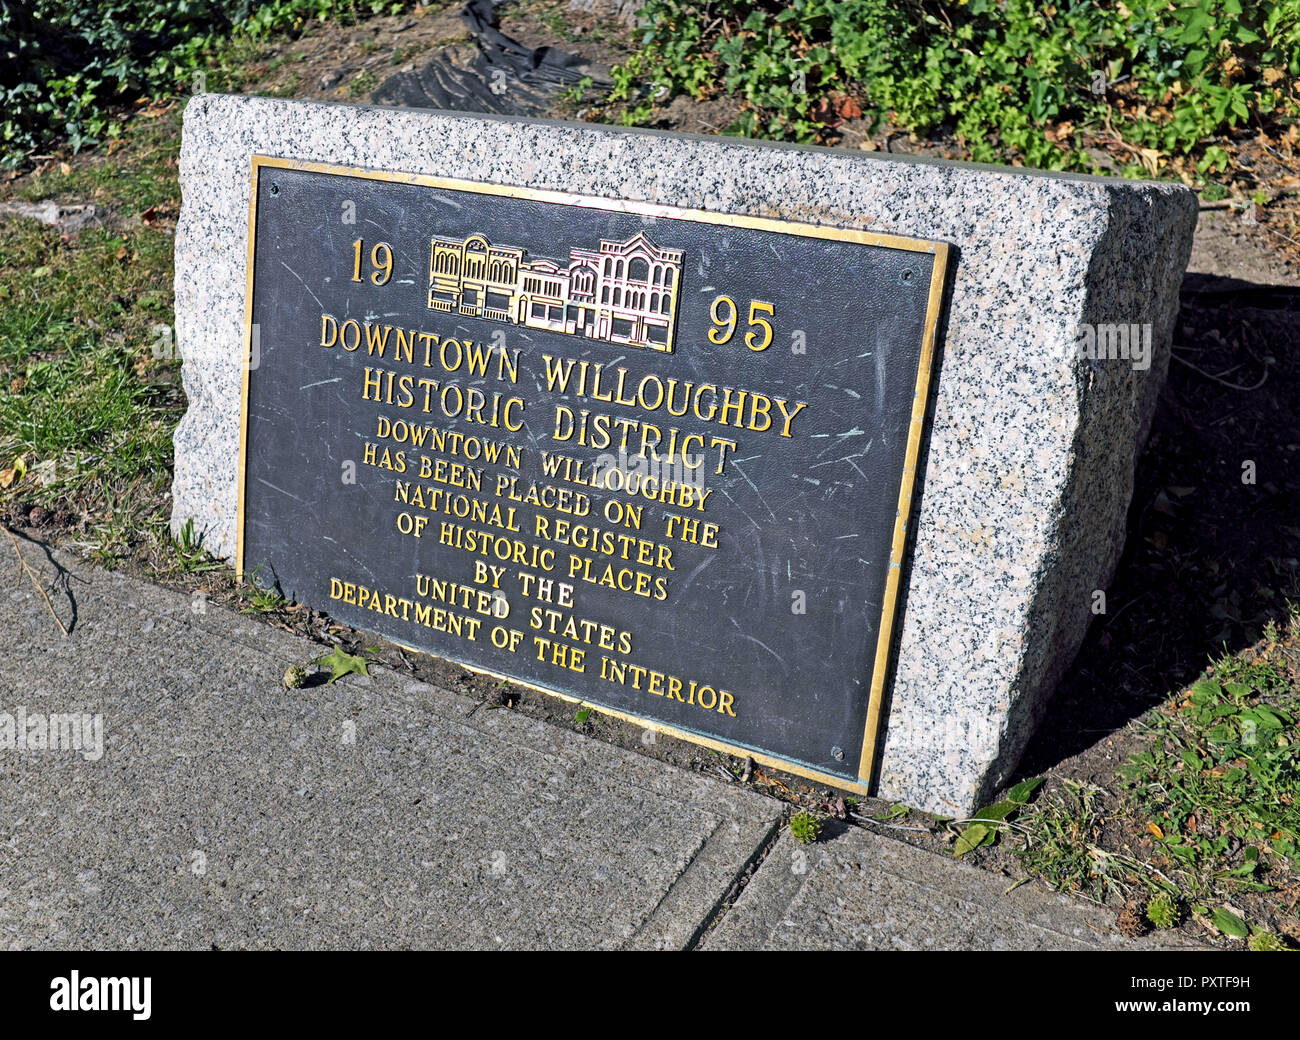 Au centre-ville de Willoughby, un quartier historique de l'Ohio plaque qui désigne sa 1995 Inscription à l'US National Register of Historic Places est sur une pierre. Banque D'Images